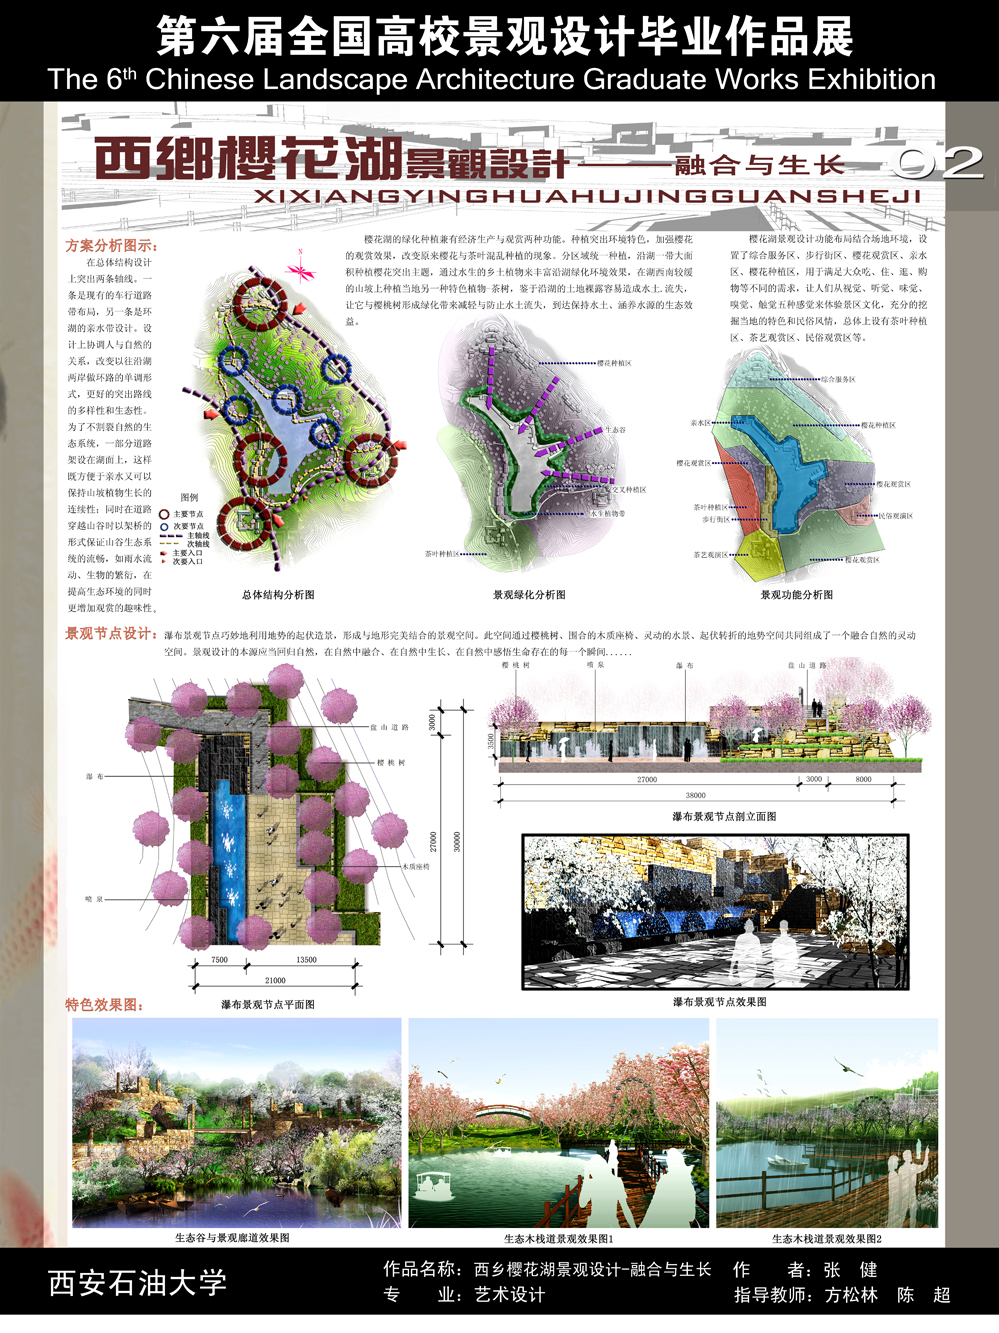 西乡樱花湖景观设计 — 融合与生长-2